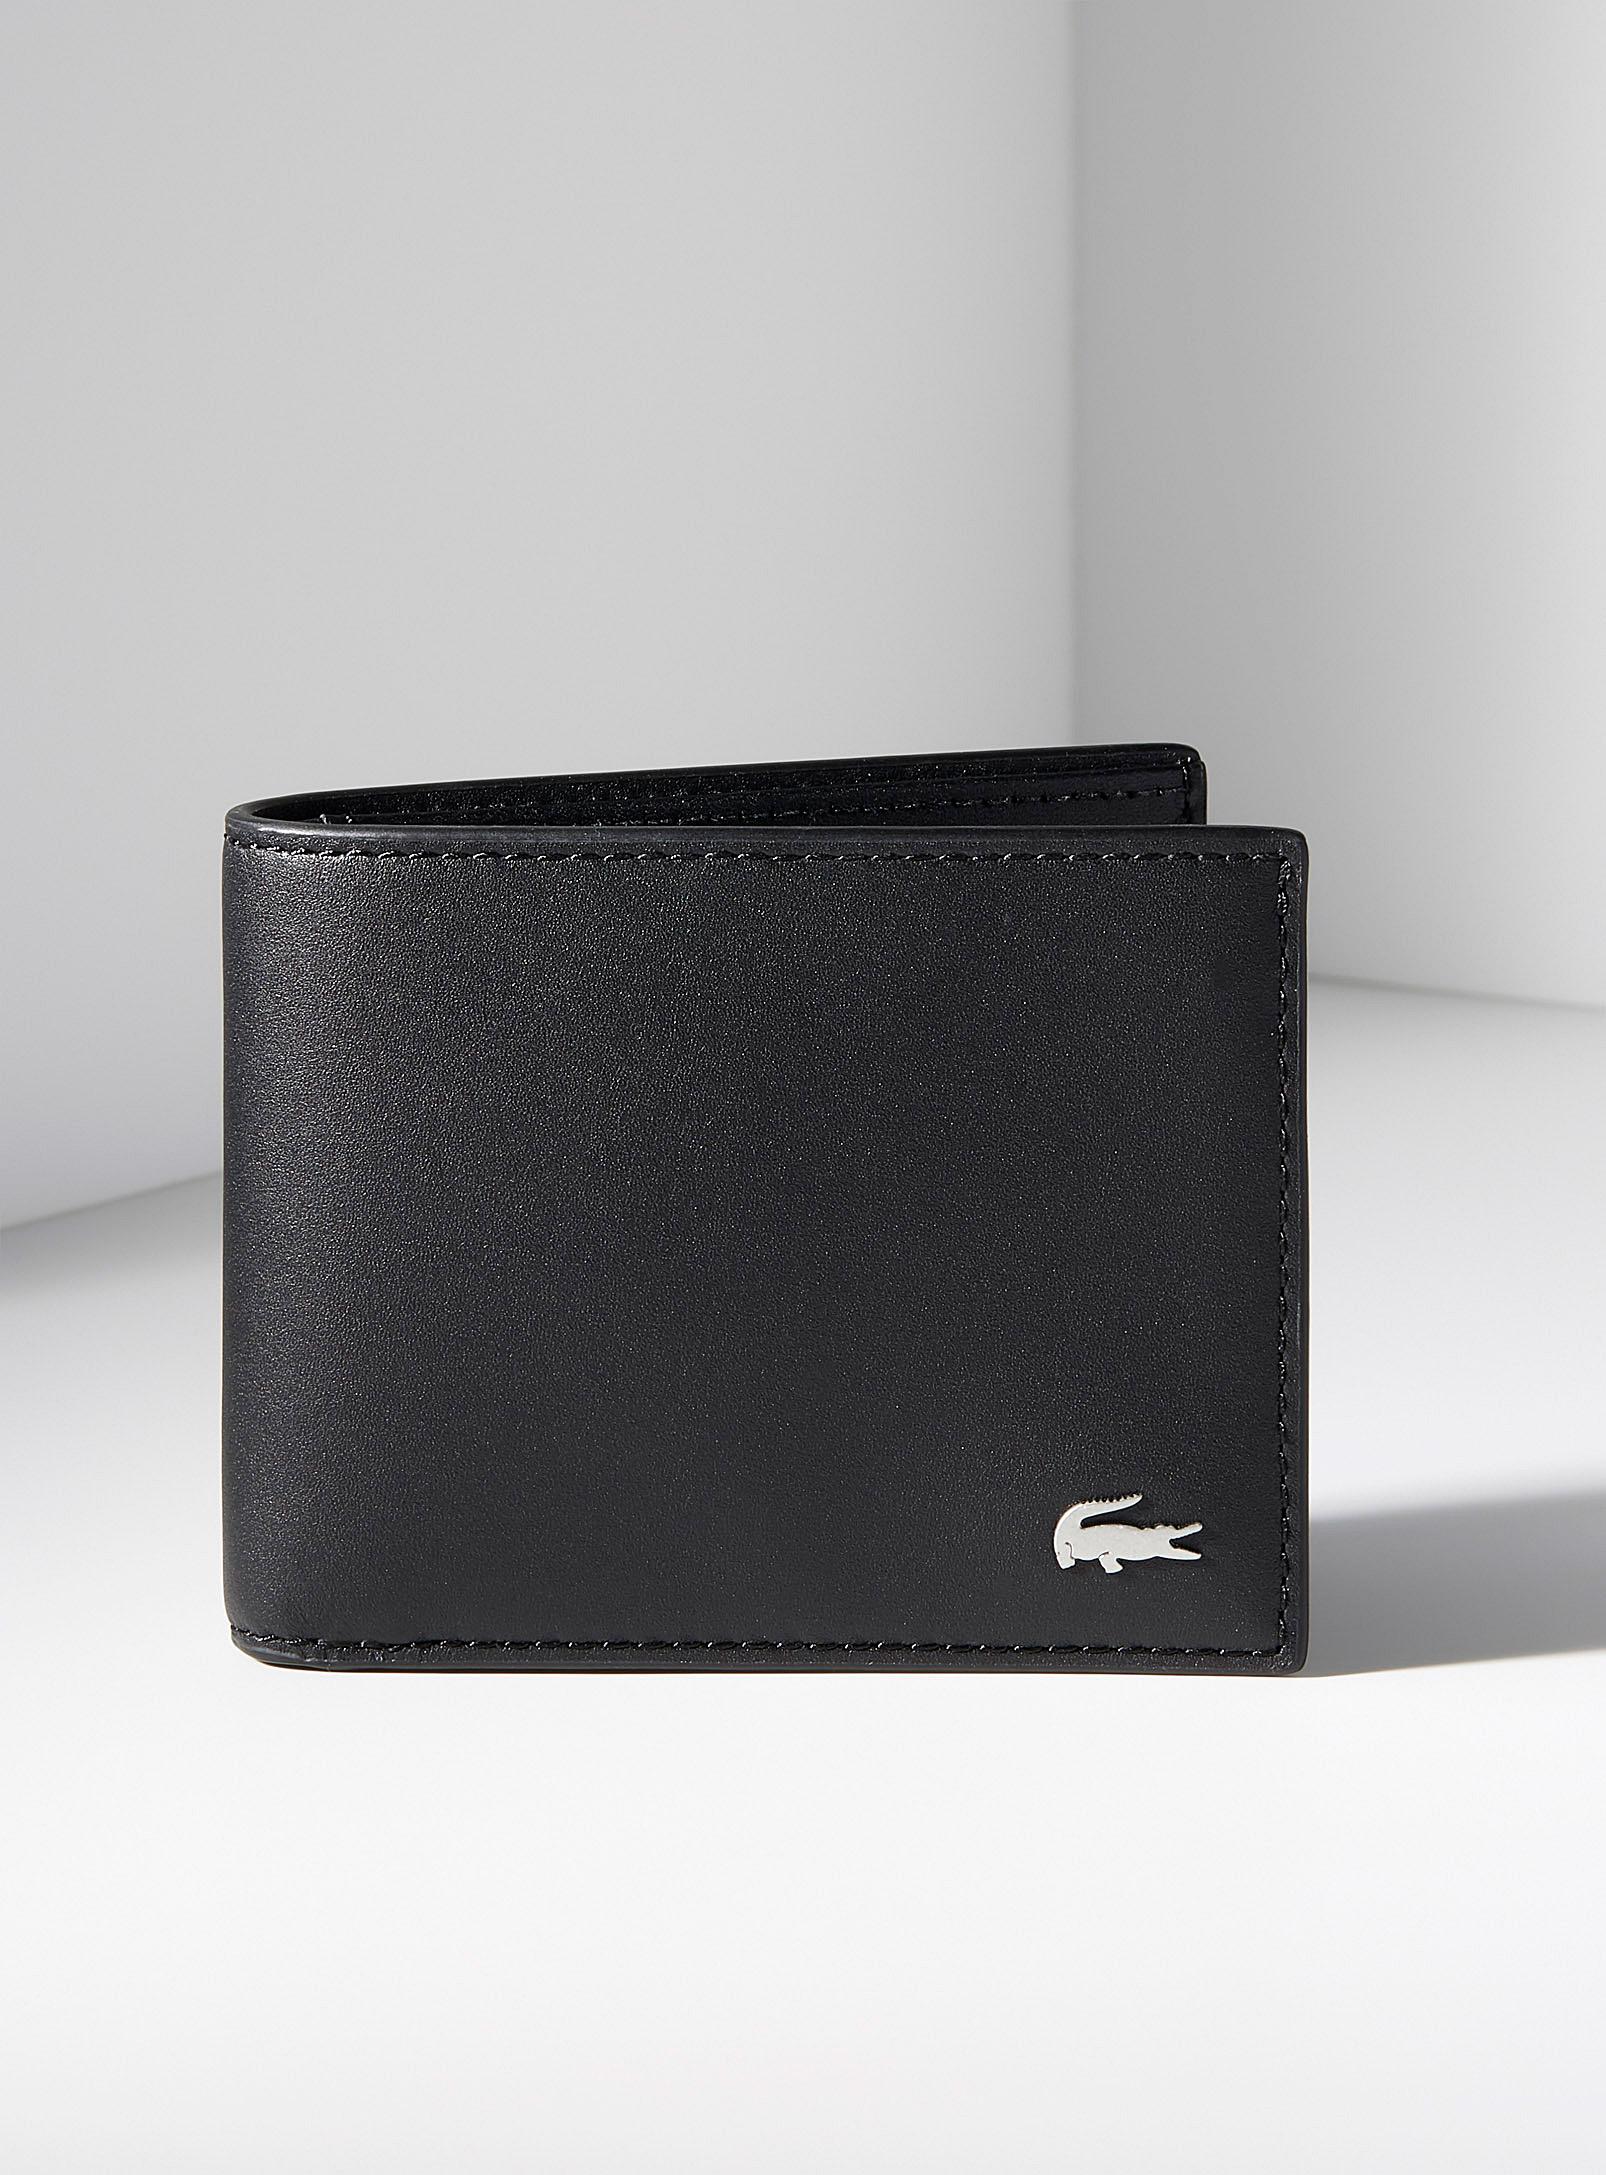 Lacoste Fg Wallet in Black for Men - Lyst